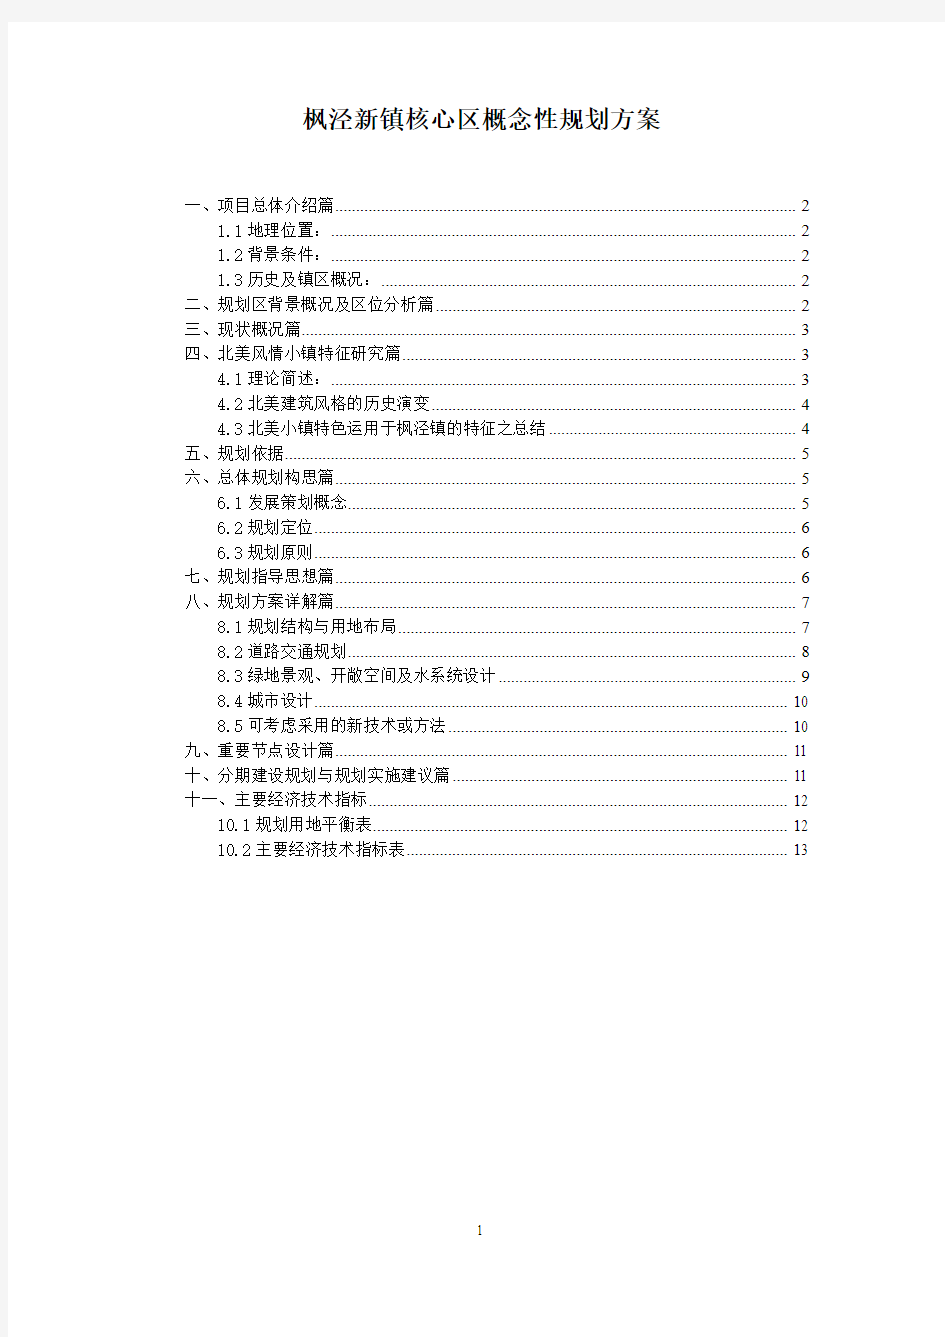 枫泾新镇核心区概念性规划方案(同济)讲解